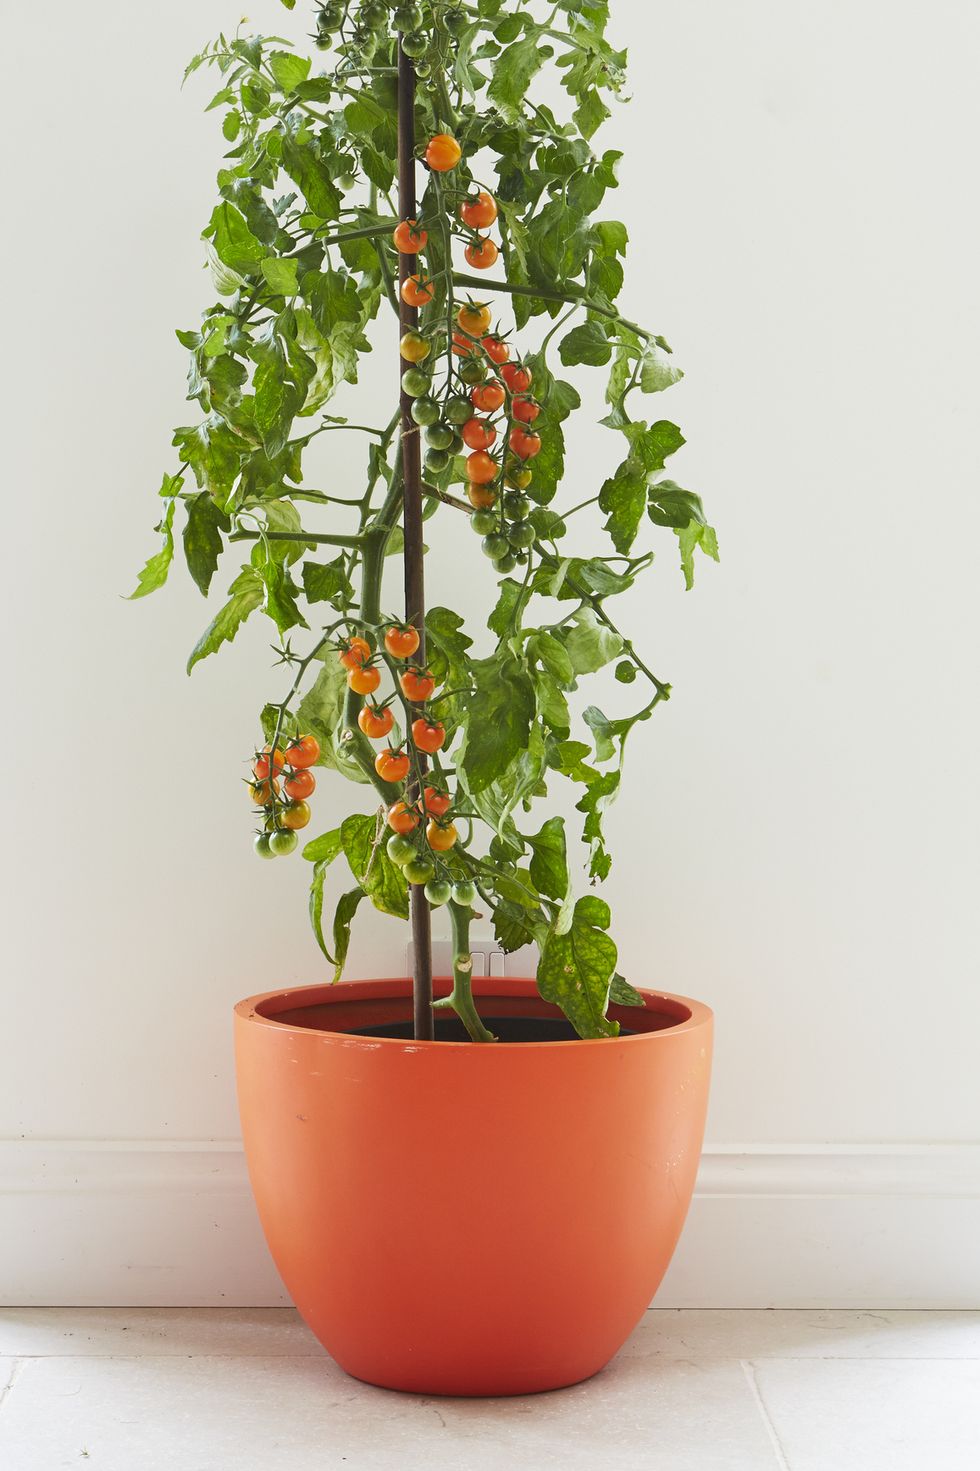 Hình ảnh cận cảnh cây cà chua xanh tốt trồng trong chậu màu cam